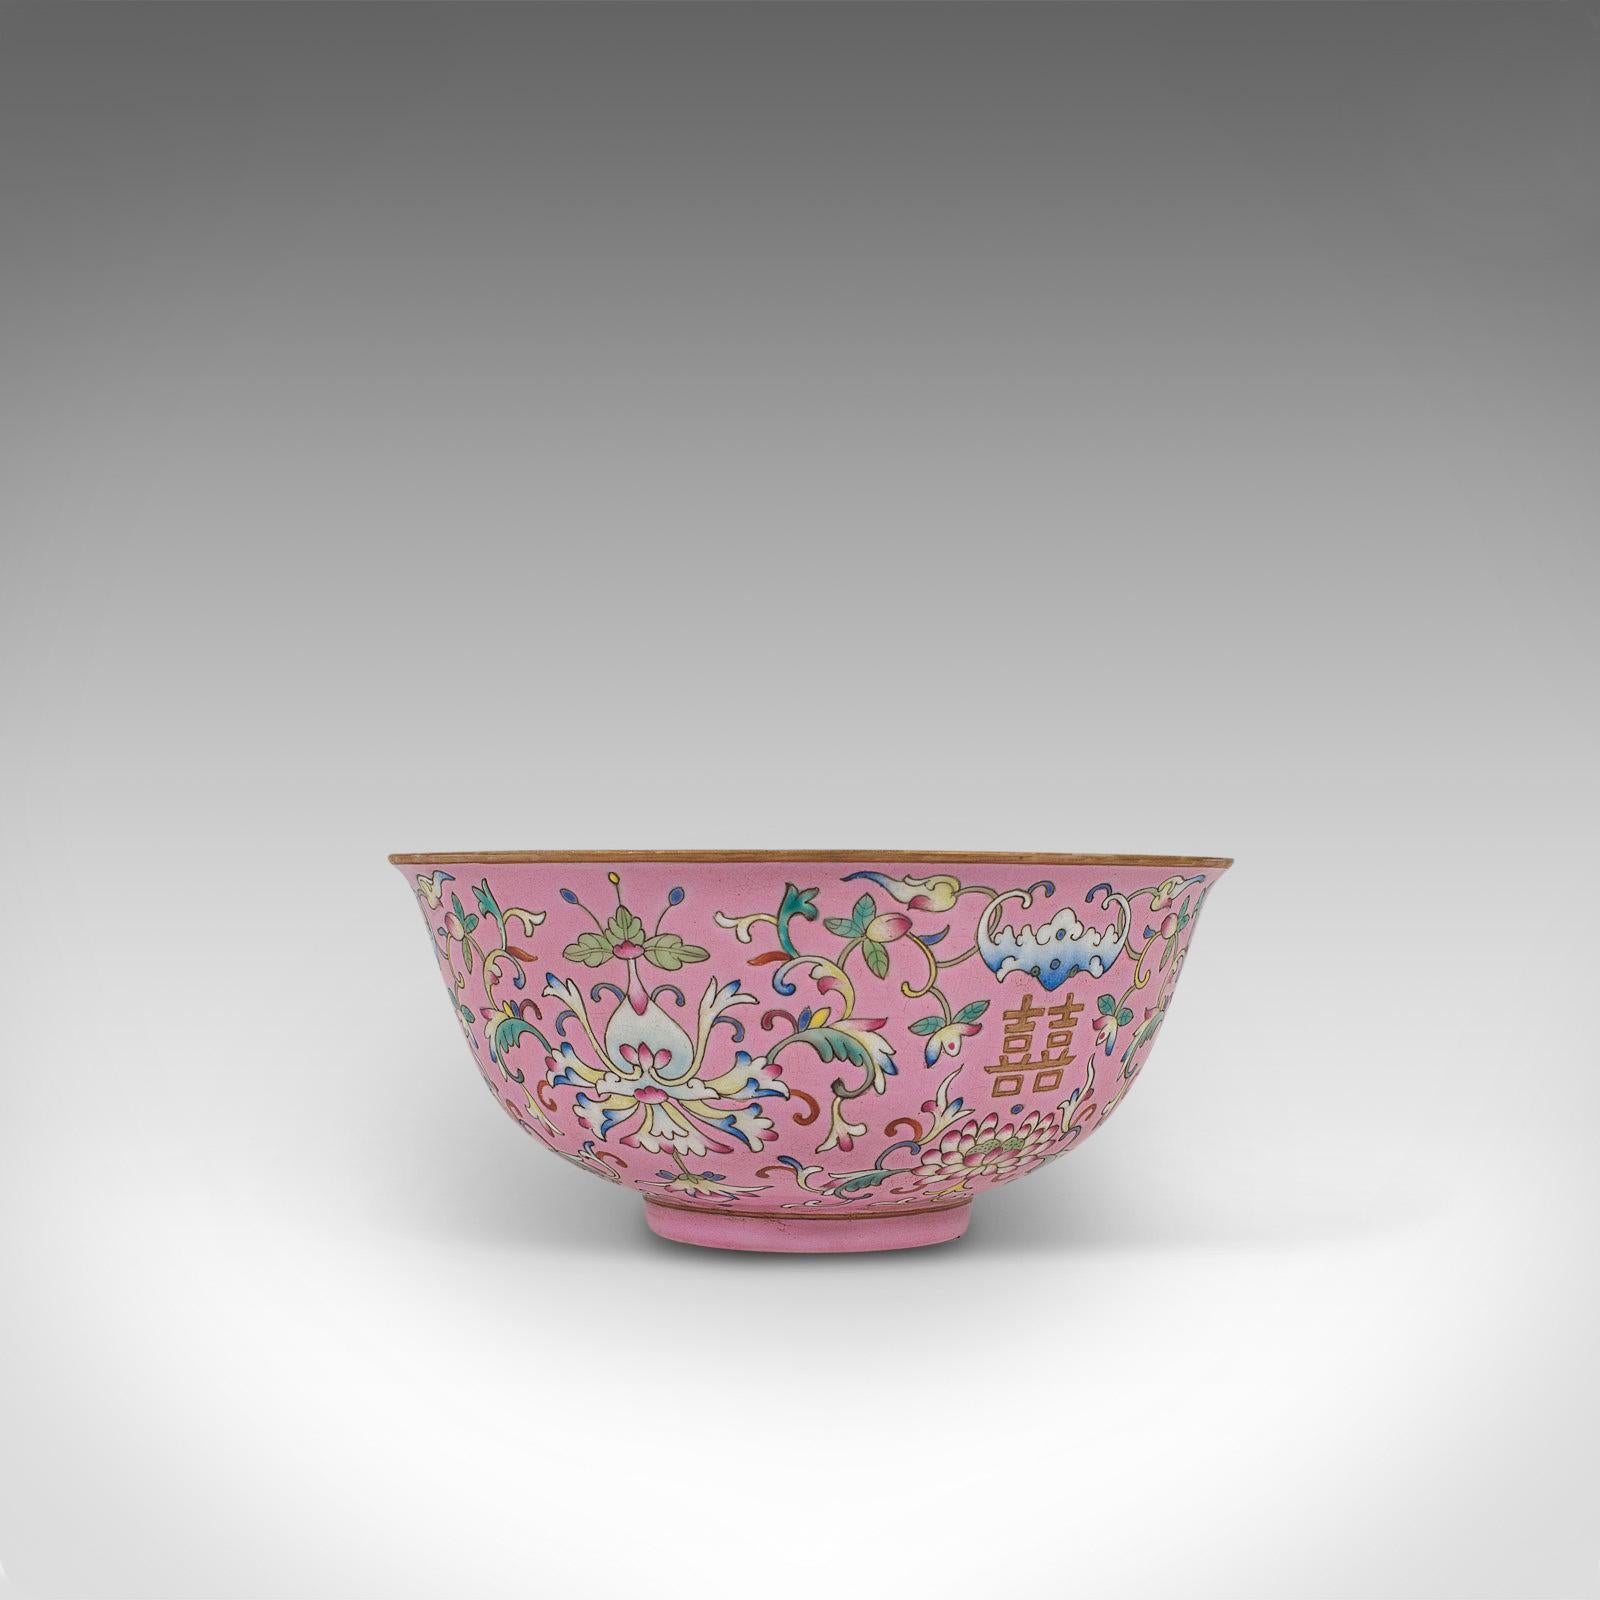 19th Century Antique Decorative Marriage Bowl, Chinese, Ceramic, Ceremonial, Dish, circa 1880